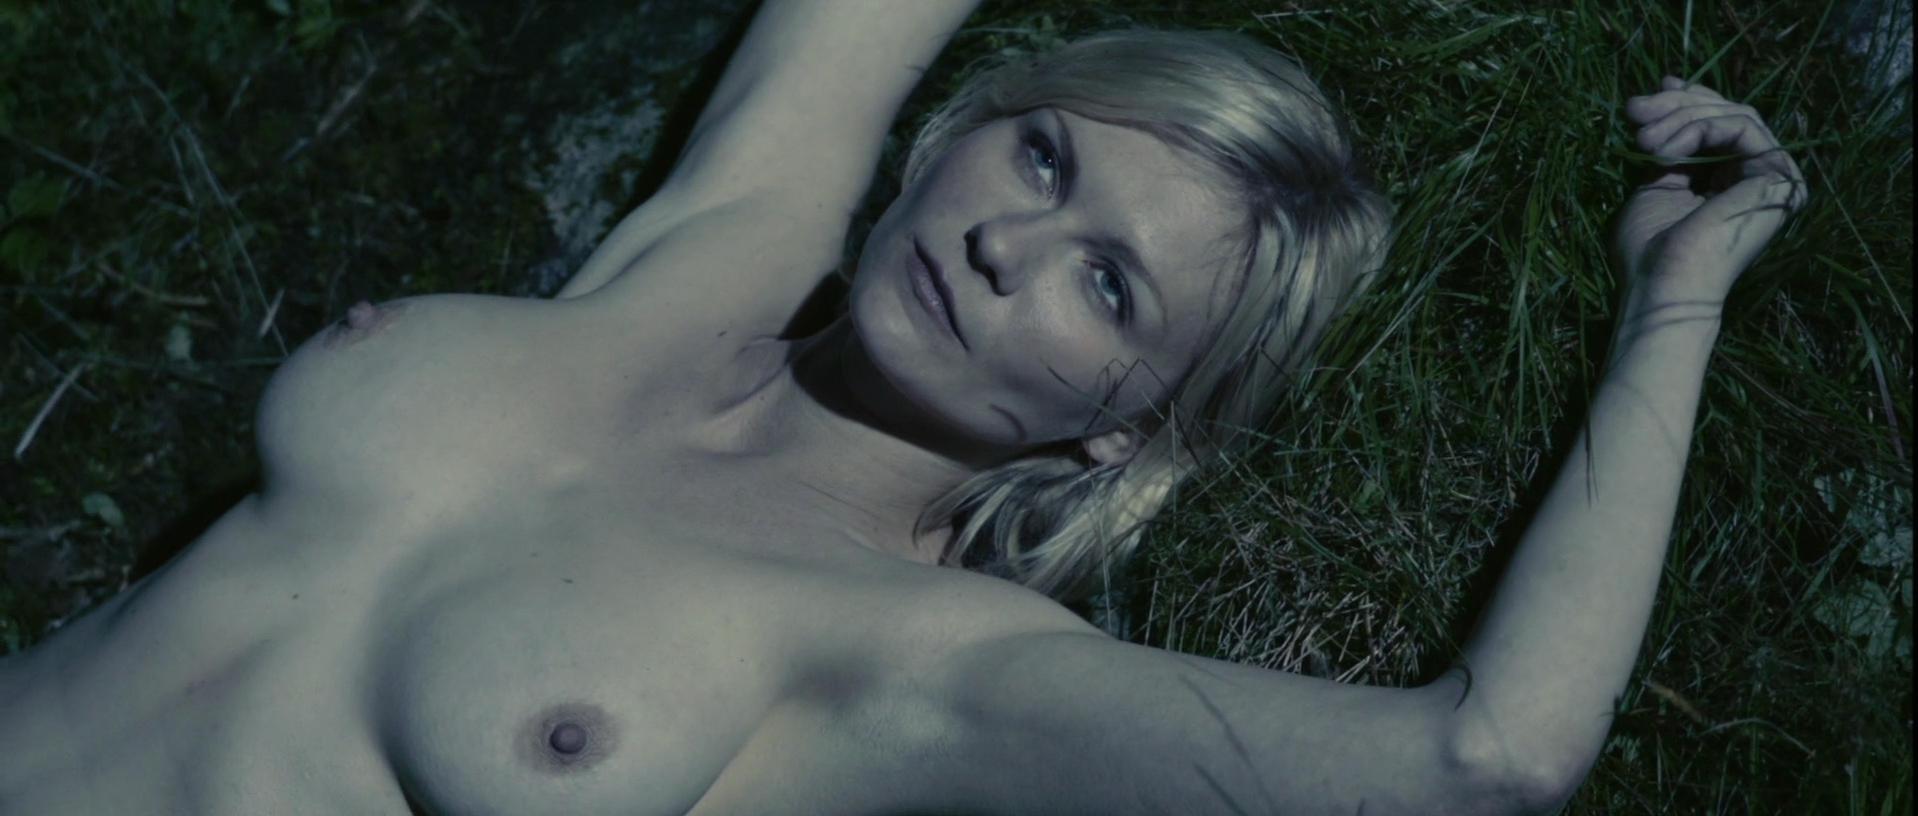 Kirsten dunst nude sex scenes